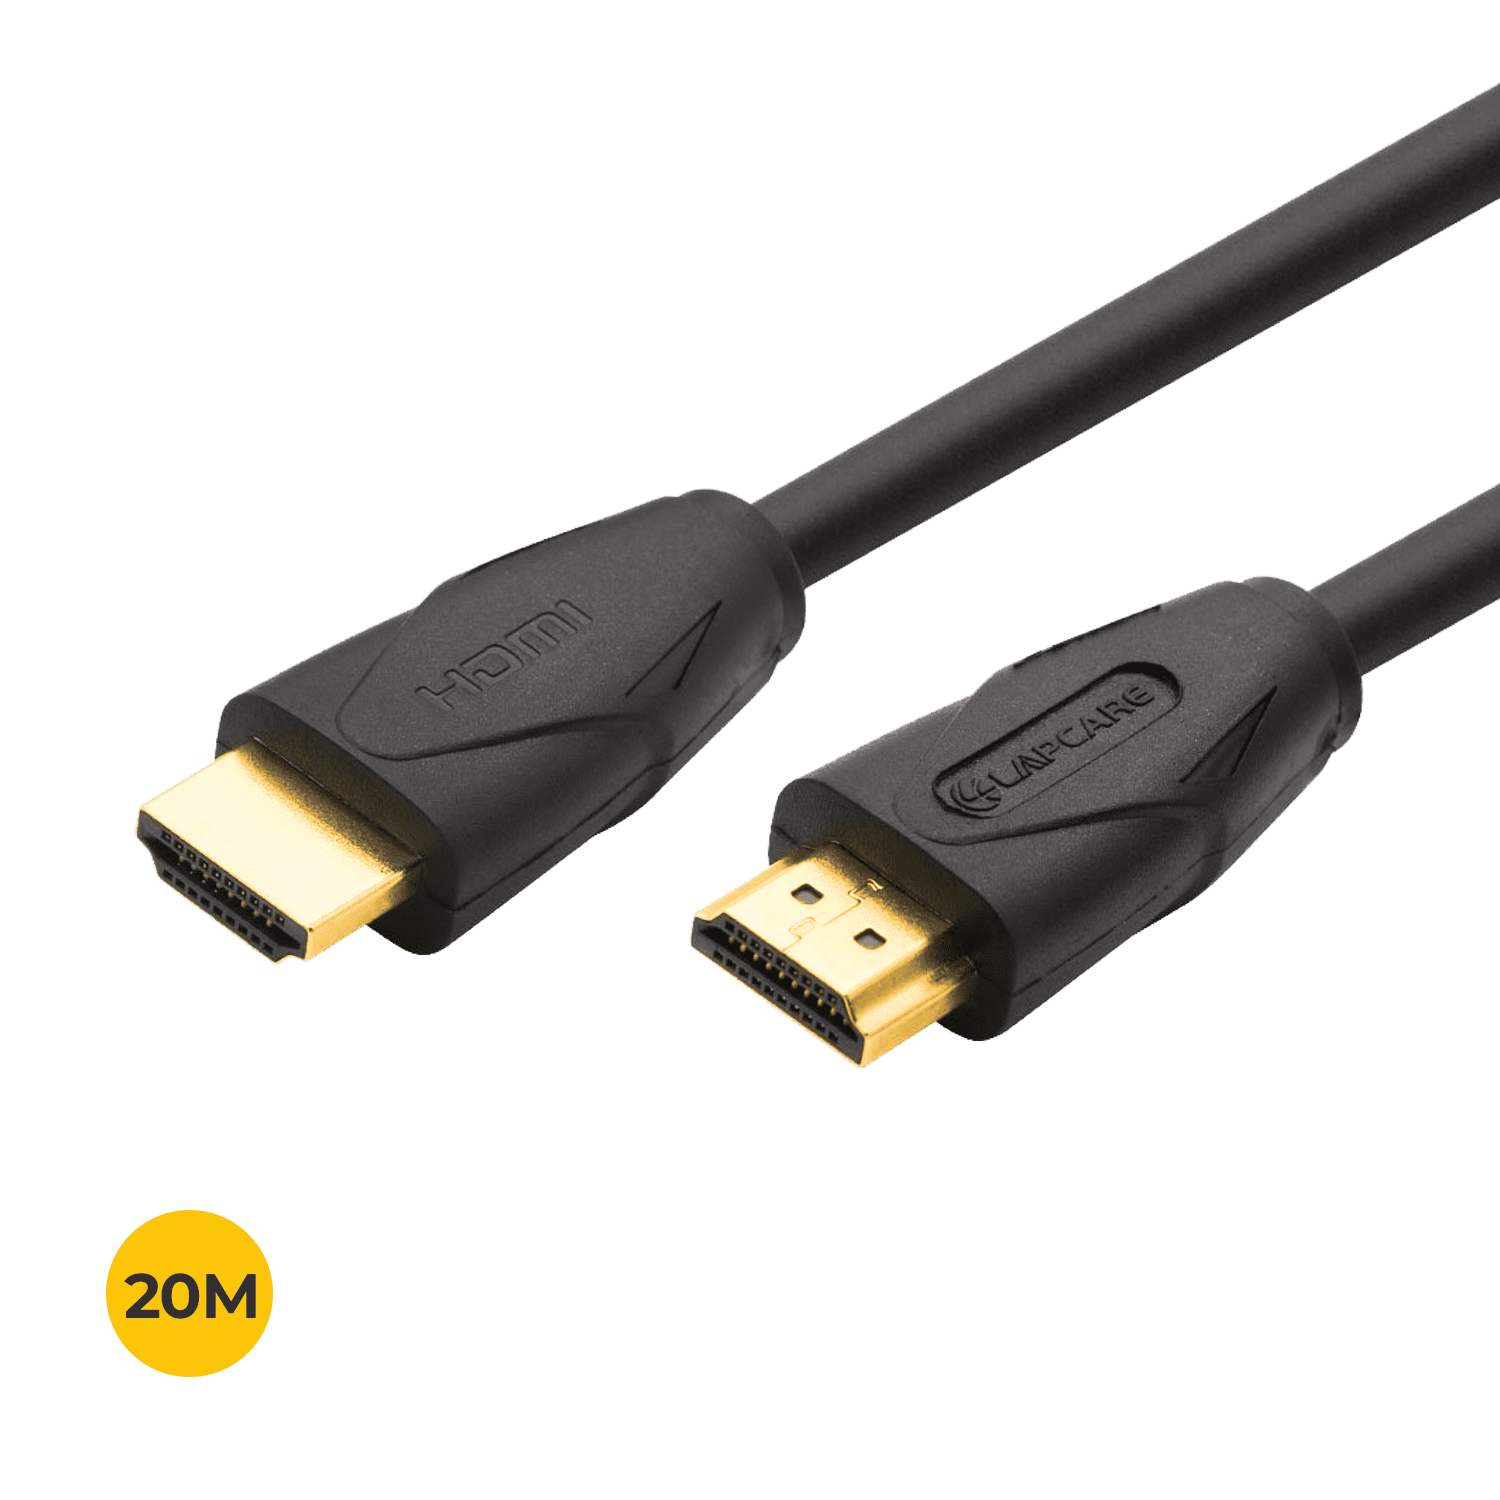 CABLE HDMI 7M PLANO